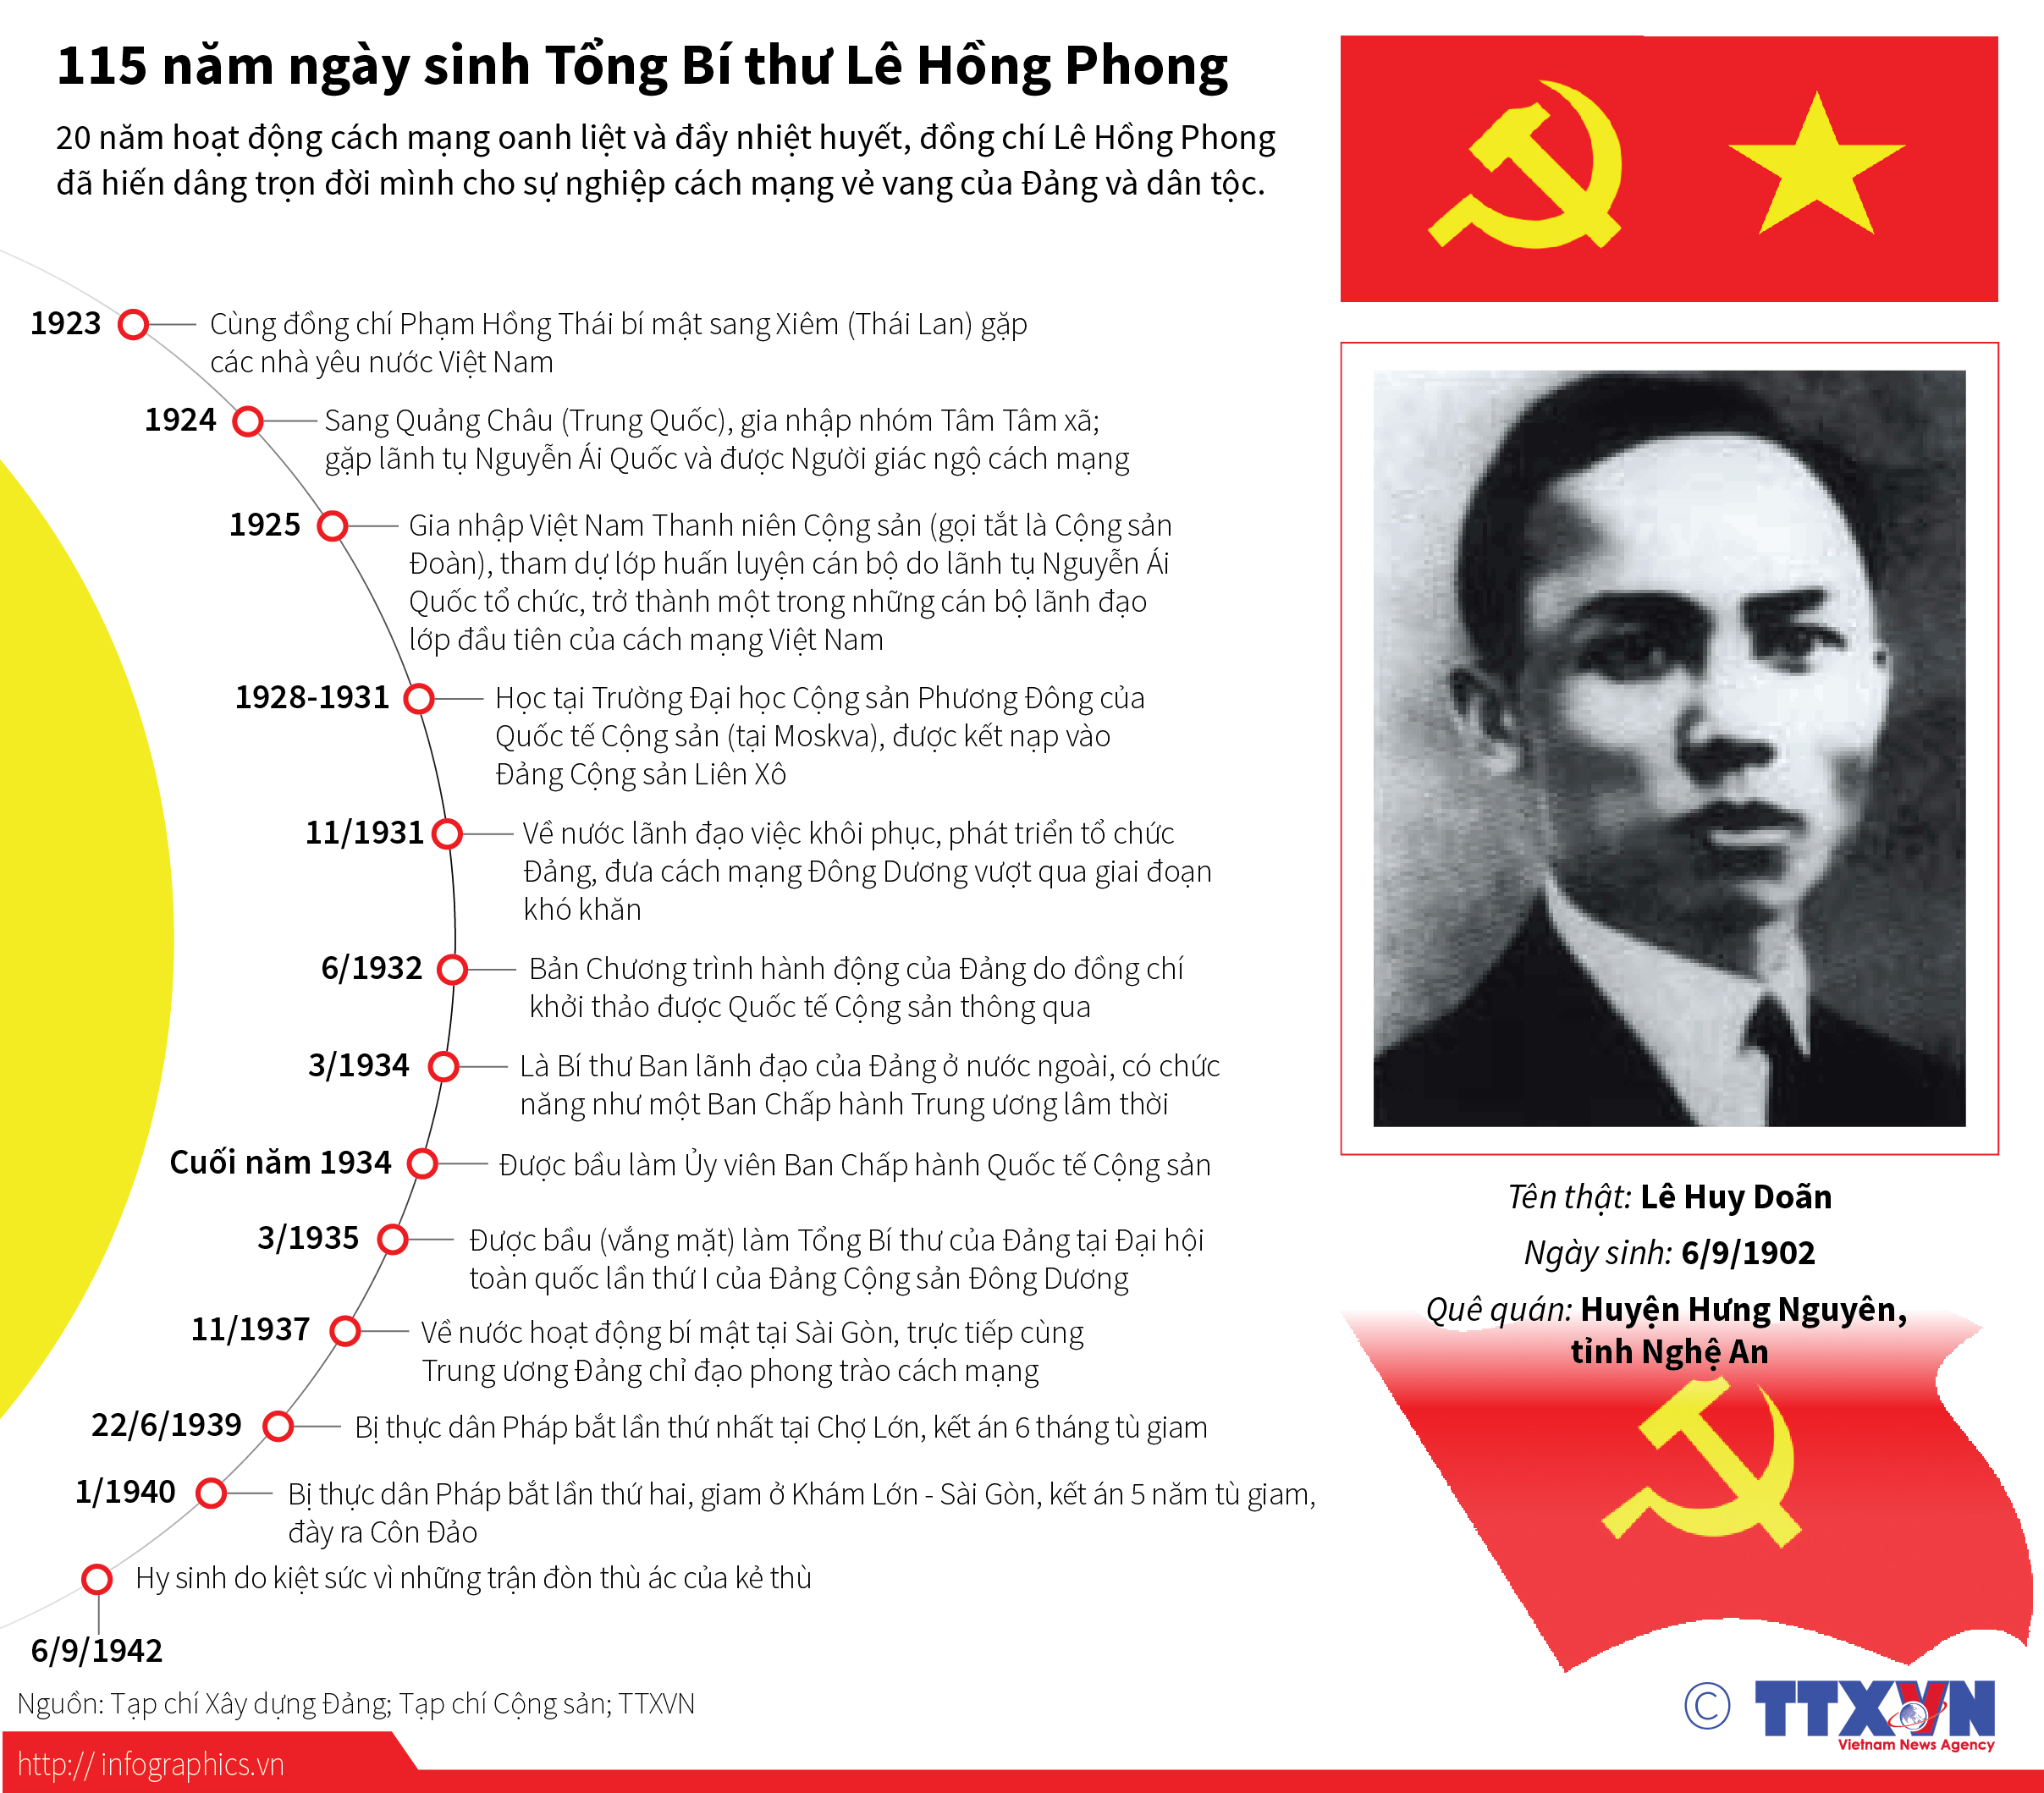 Tuyên truyền kỷ niệm 120 năm Ngày sinh đồng chí Lê Hồng Phong (1902 - 2022)